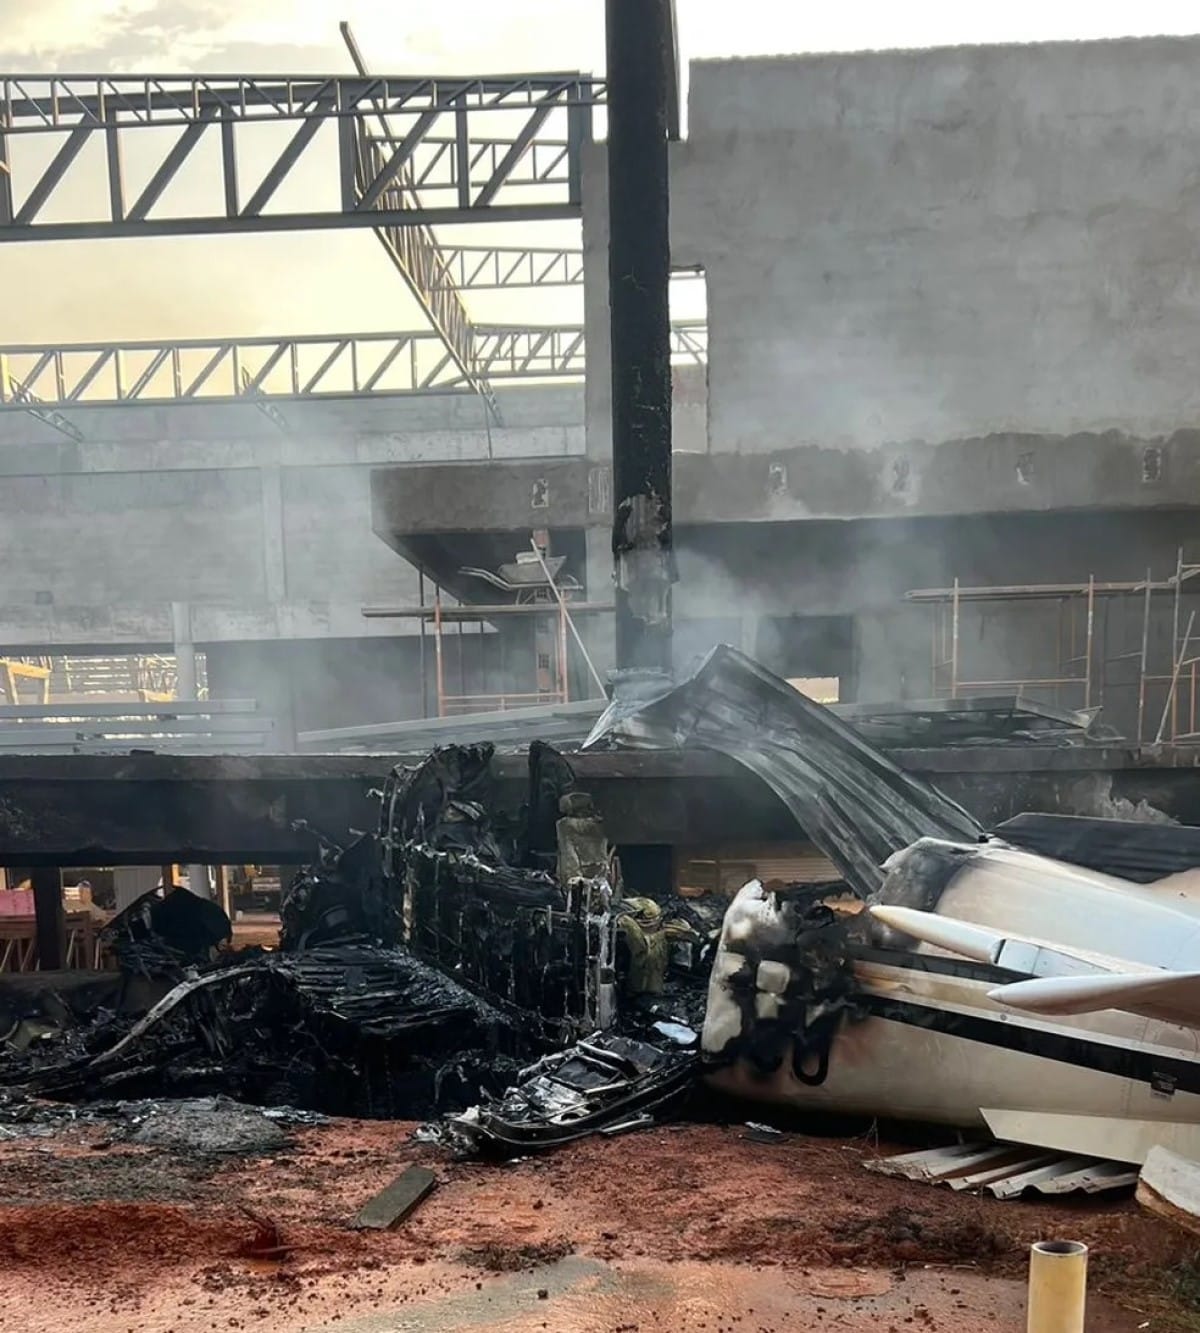 O Serviço Regional de Investigação e Prevenção de Acidentes Aeronáuticos (Seripa IV), da Força Aérea Brasileira (FAB) já iniciou as investigações para apurar as causas do acidente.